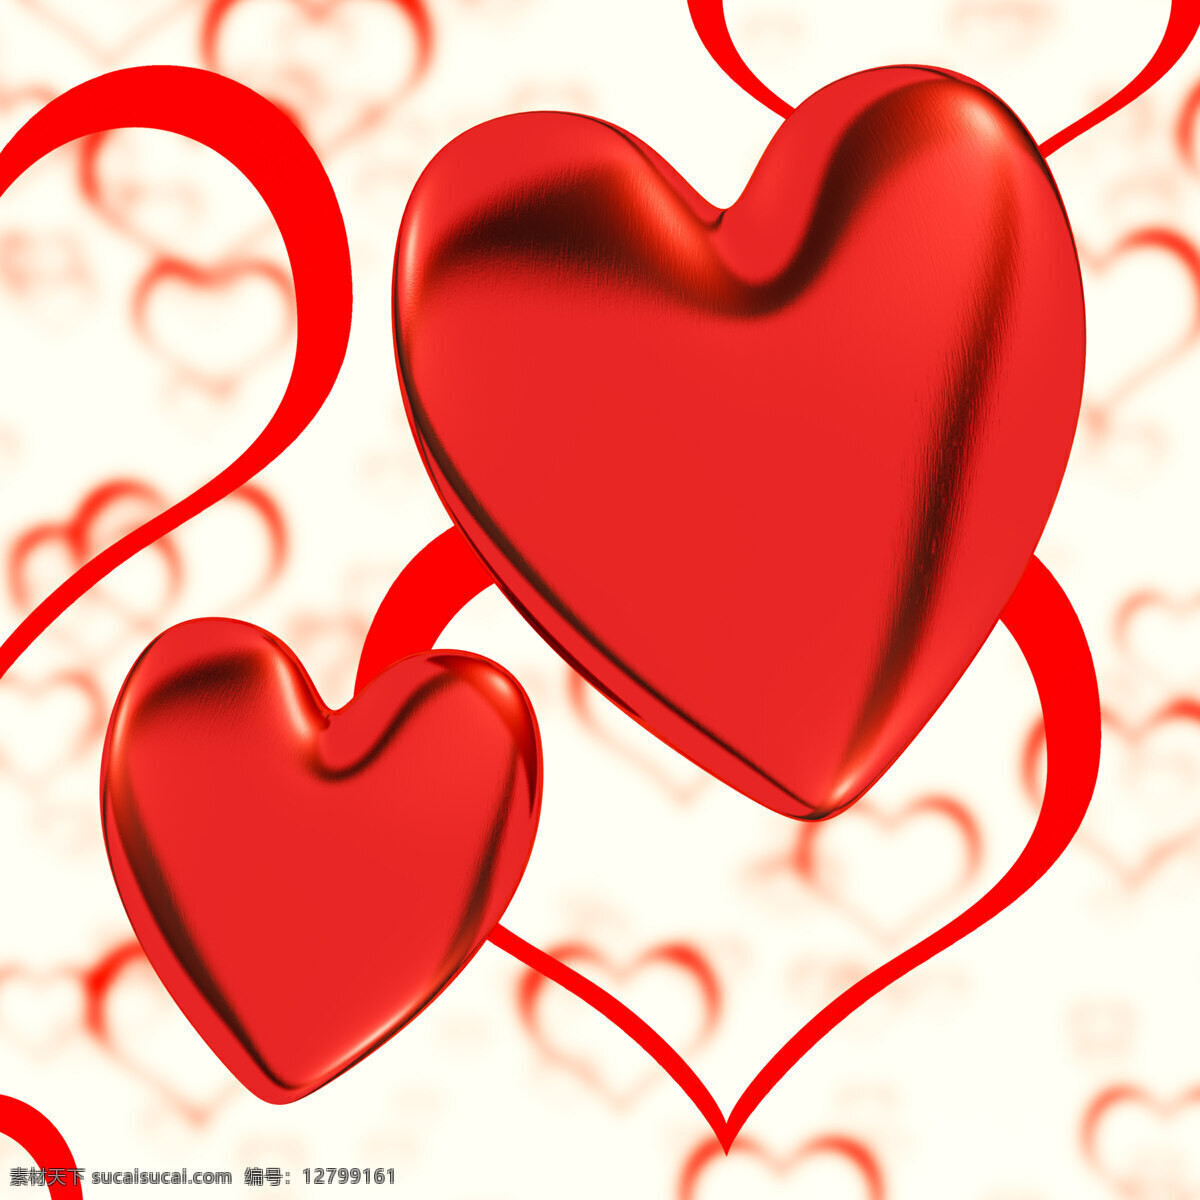 红色 心 心脏 背景 显示 浪漫 爱情 感觉 文化艺术